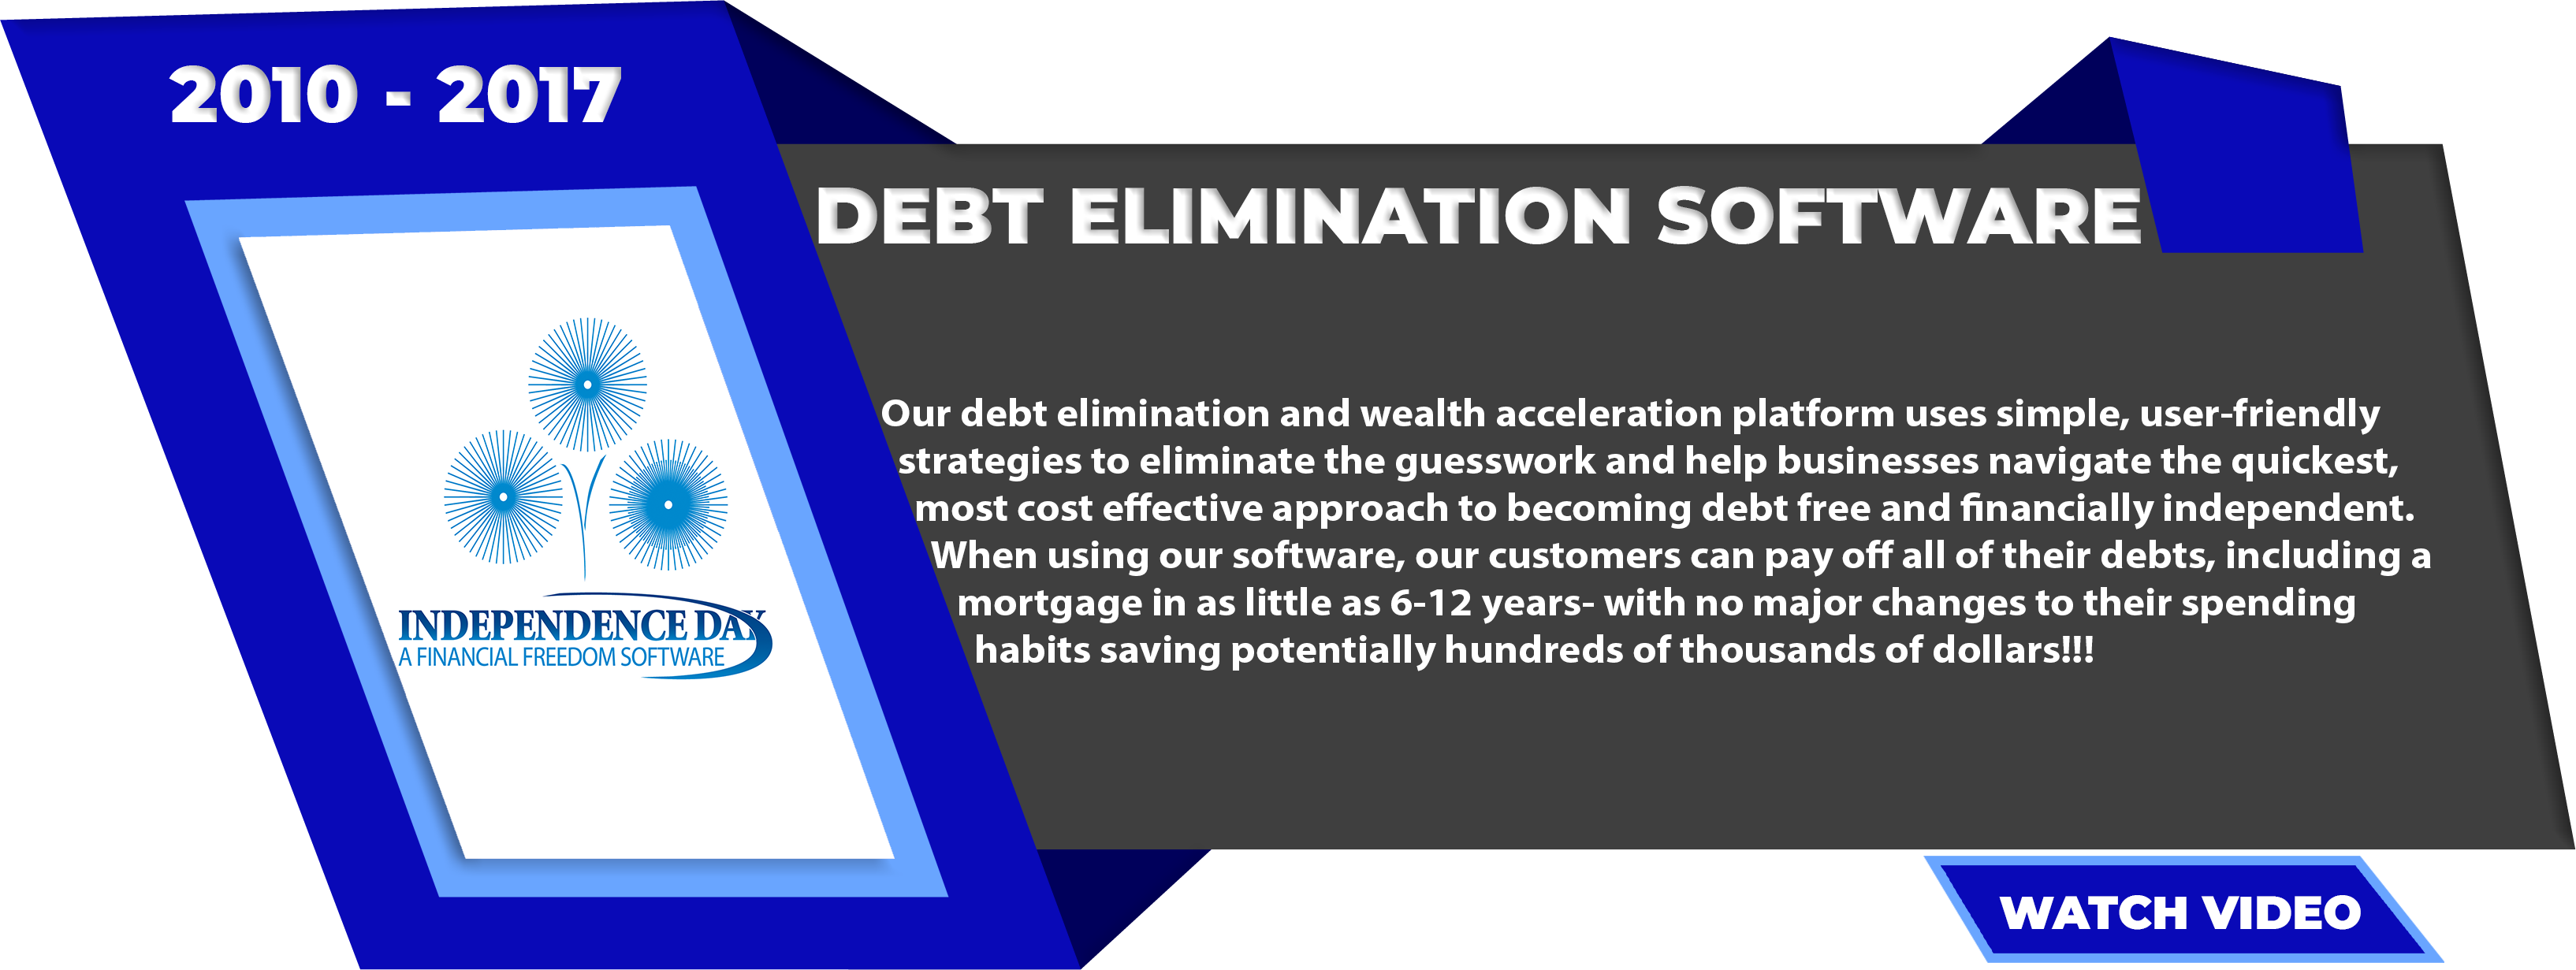 Debt Elimination Software 2010 – Present